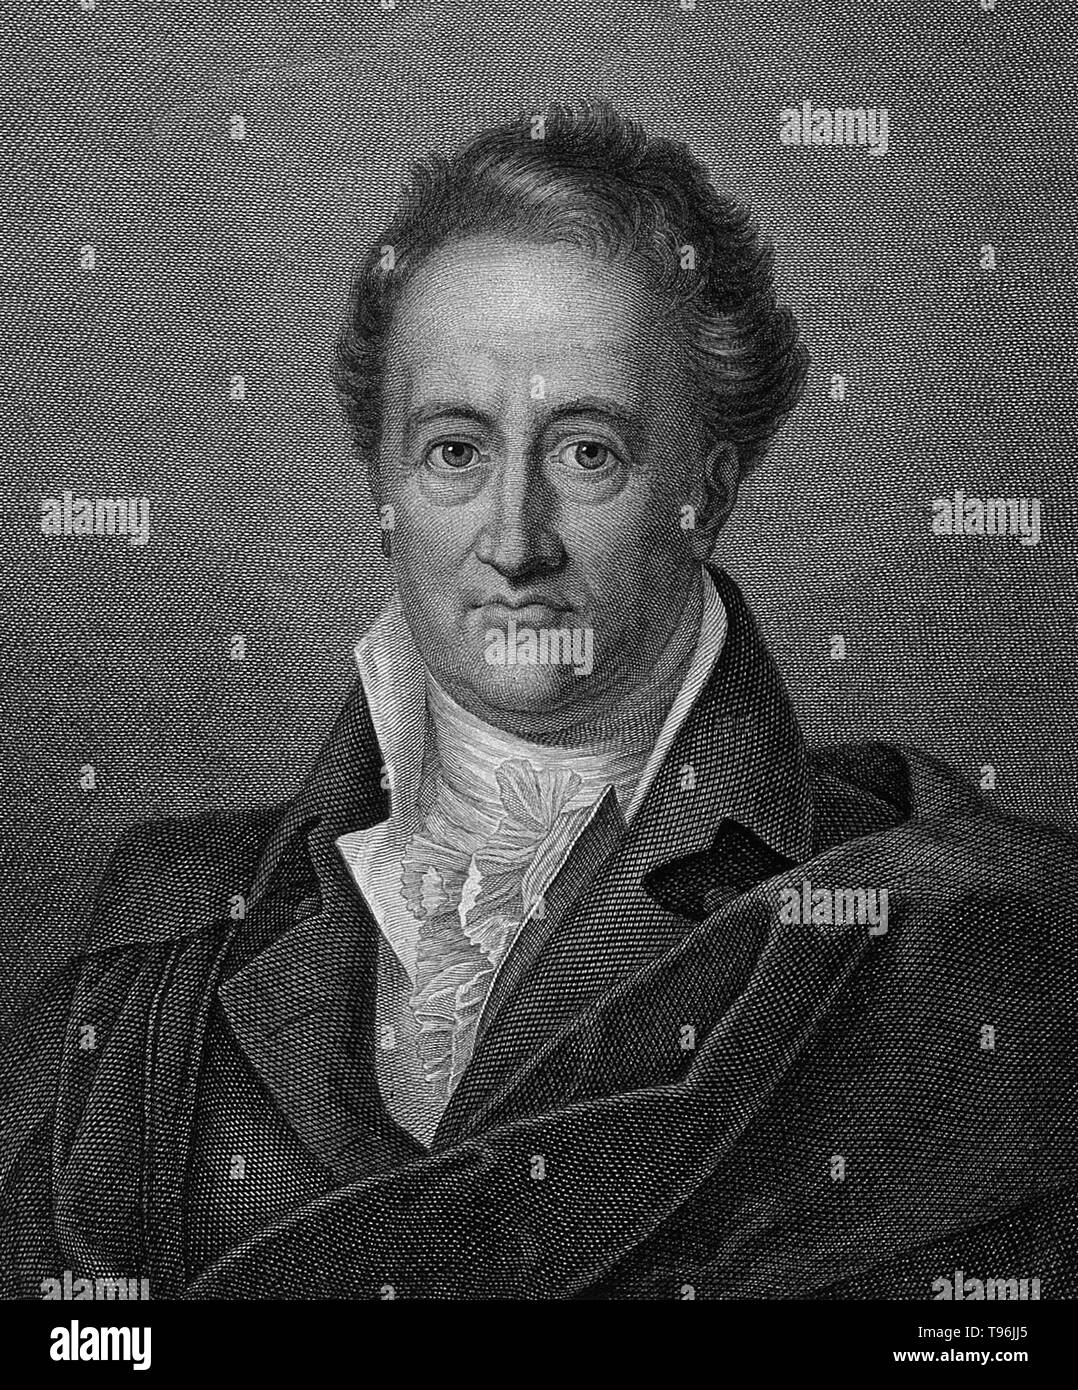 Johann Wolfgang von Goethe (28. August 1749 - 22. März 1832) war ein deutscher Schriftsteller, bildende Künstler, Biologe, Staatsmann, theoretische Physiker und Universalgelehrten. Er ist das höchste Genie der modernen deutschen Literatur. Seine Arbeiten erstrecken sich über die Bereiche der Lyrik, Drama, Prosa, Philosophie und Wissenschaft. Seine Faust wurde einer der größten dramatischen Werken der modernen europäischen Literatur genannt. Stockfoto